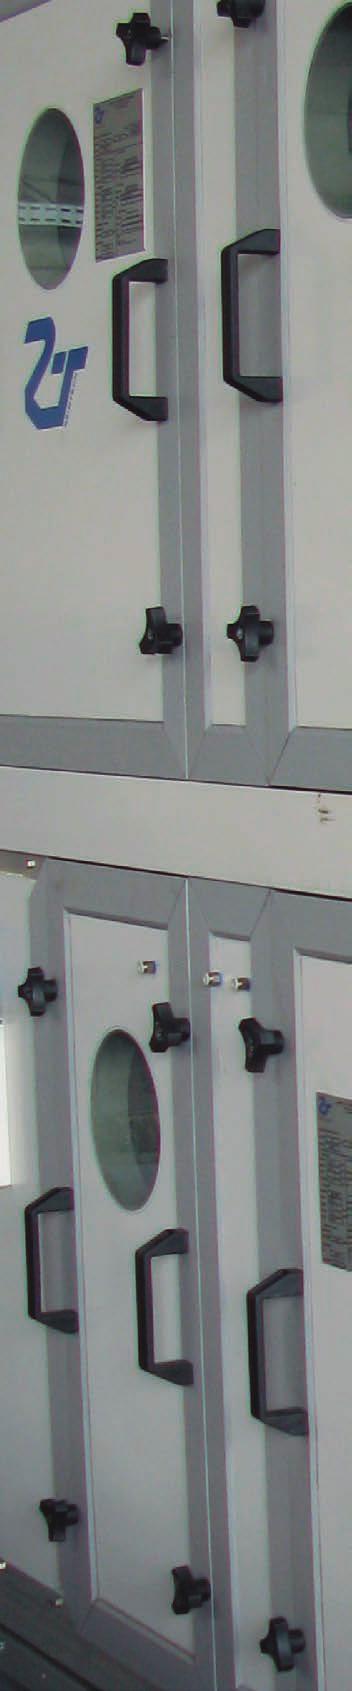 Densidade do isolamento em 38-42 Kg/m³ Portas estanques com quatro manípulos Porta-Painel com visor duplo Iluminação em todos os módulos com LED Pontos de leitura de pressão em todos os componentes